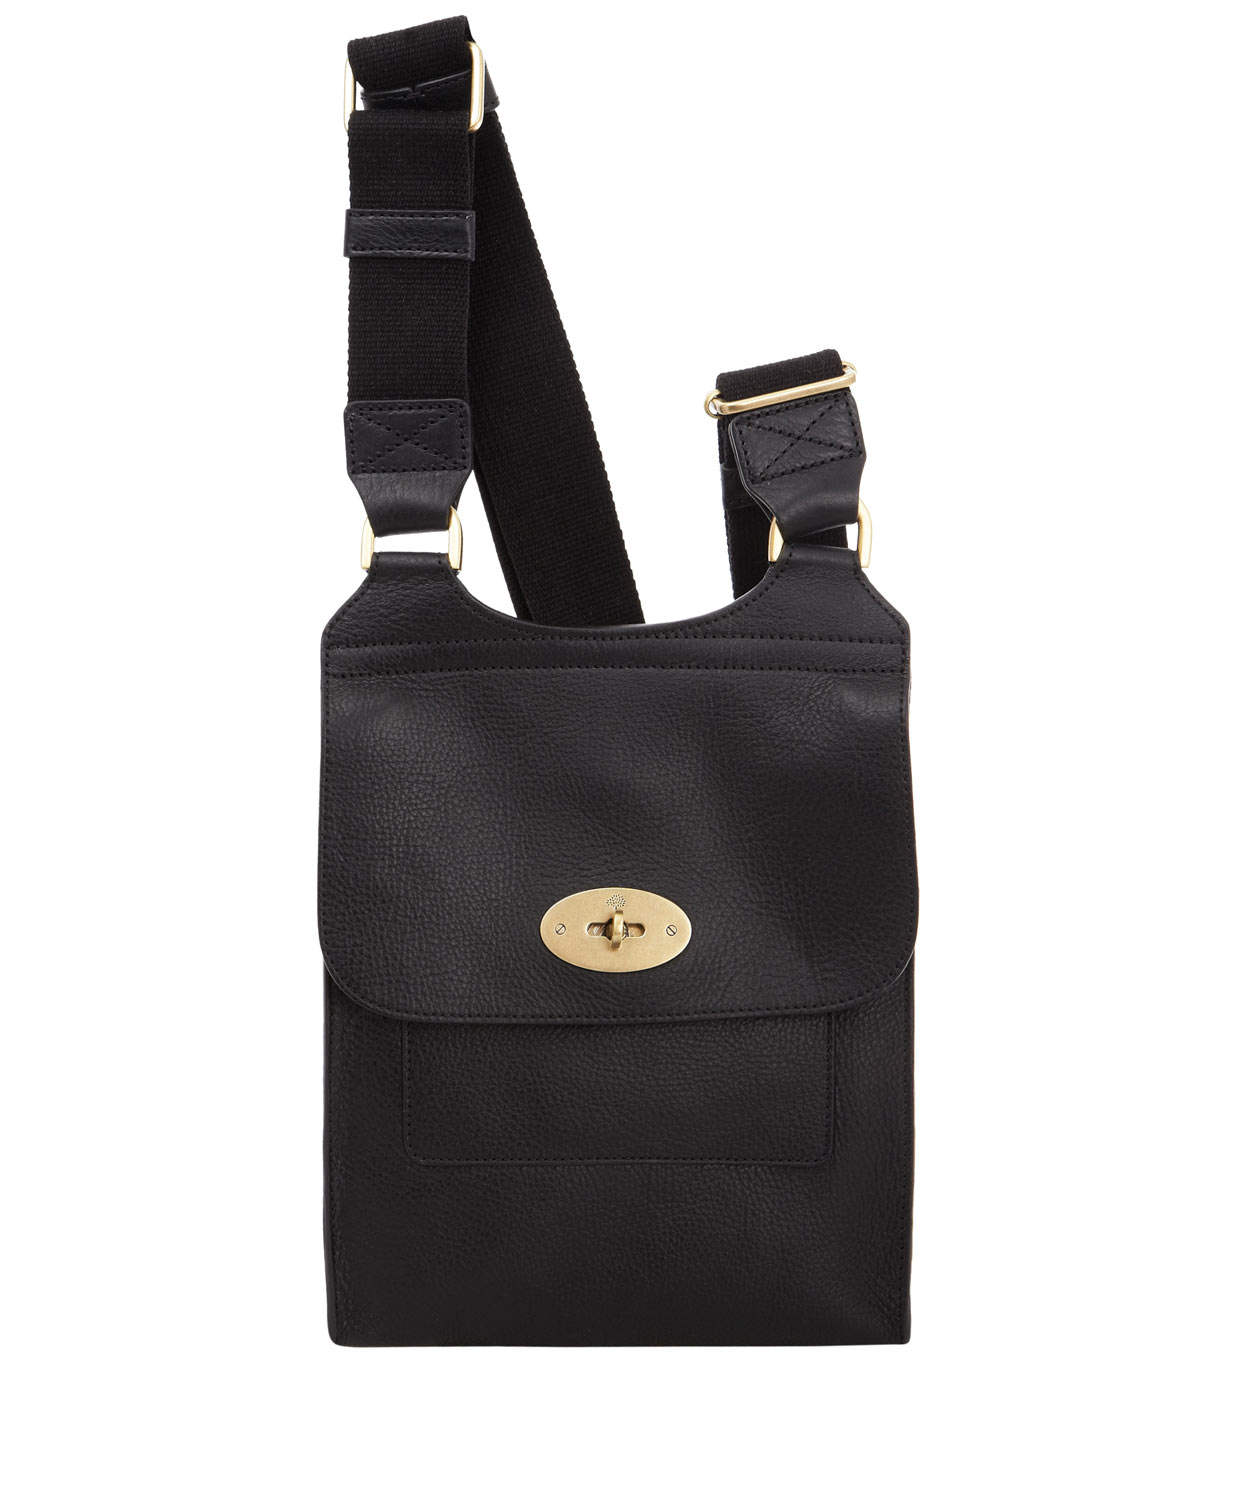 Lyst - Mulberry Black Leather Antony Messenger Bag in Black for Men